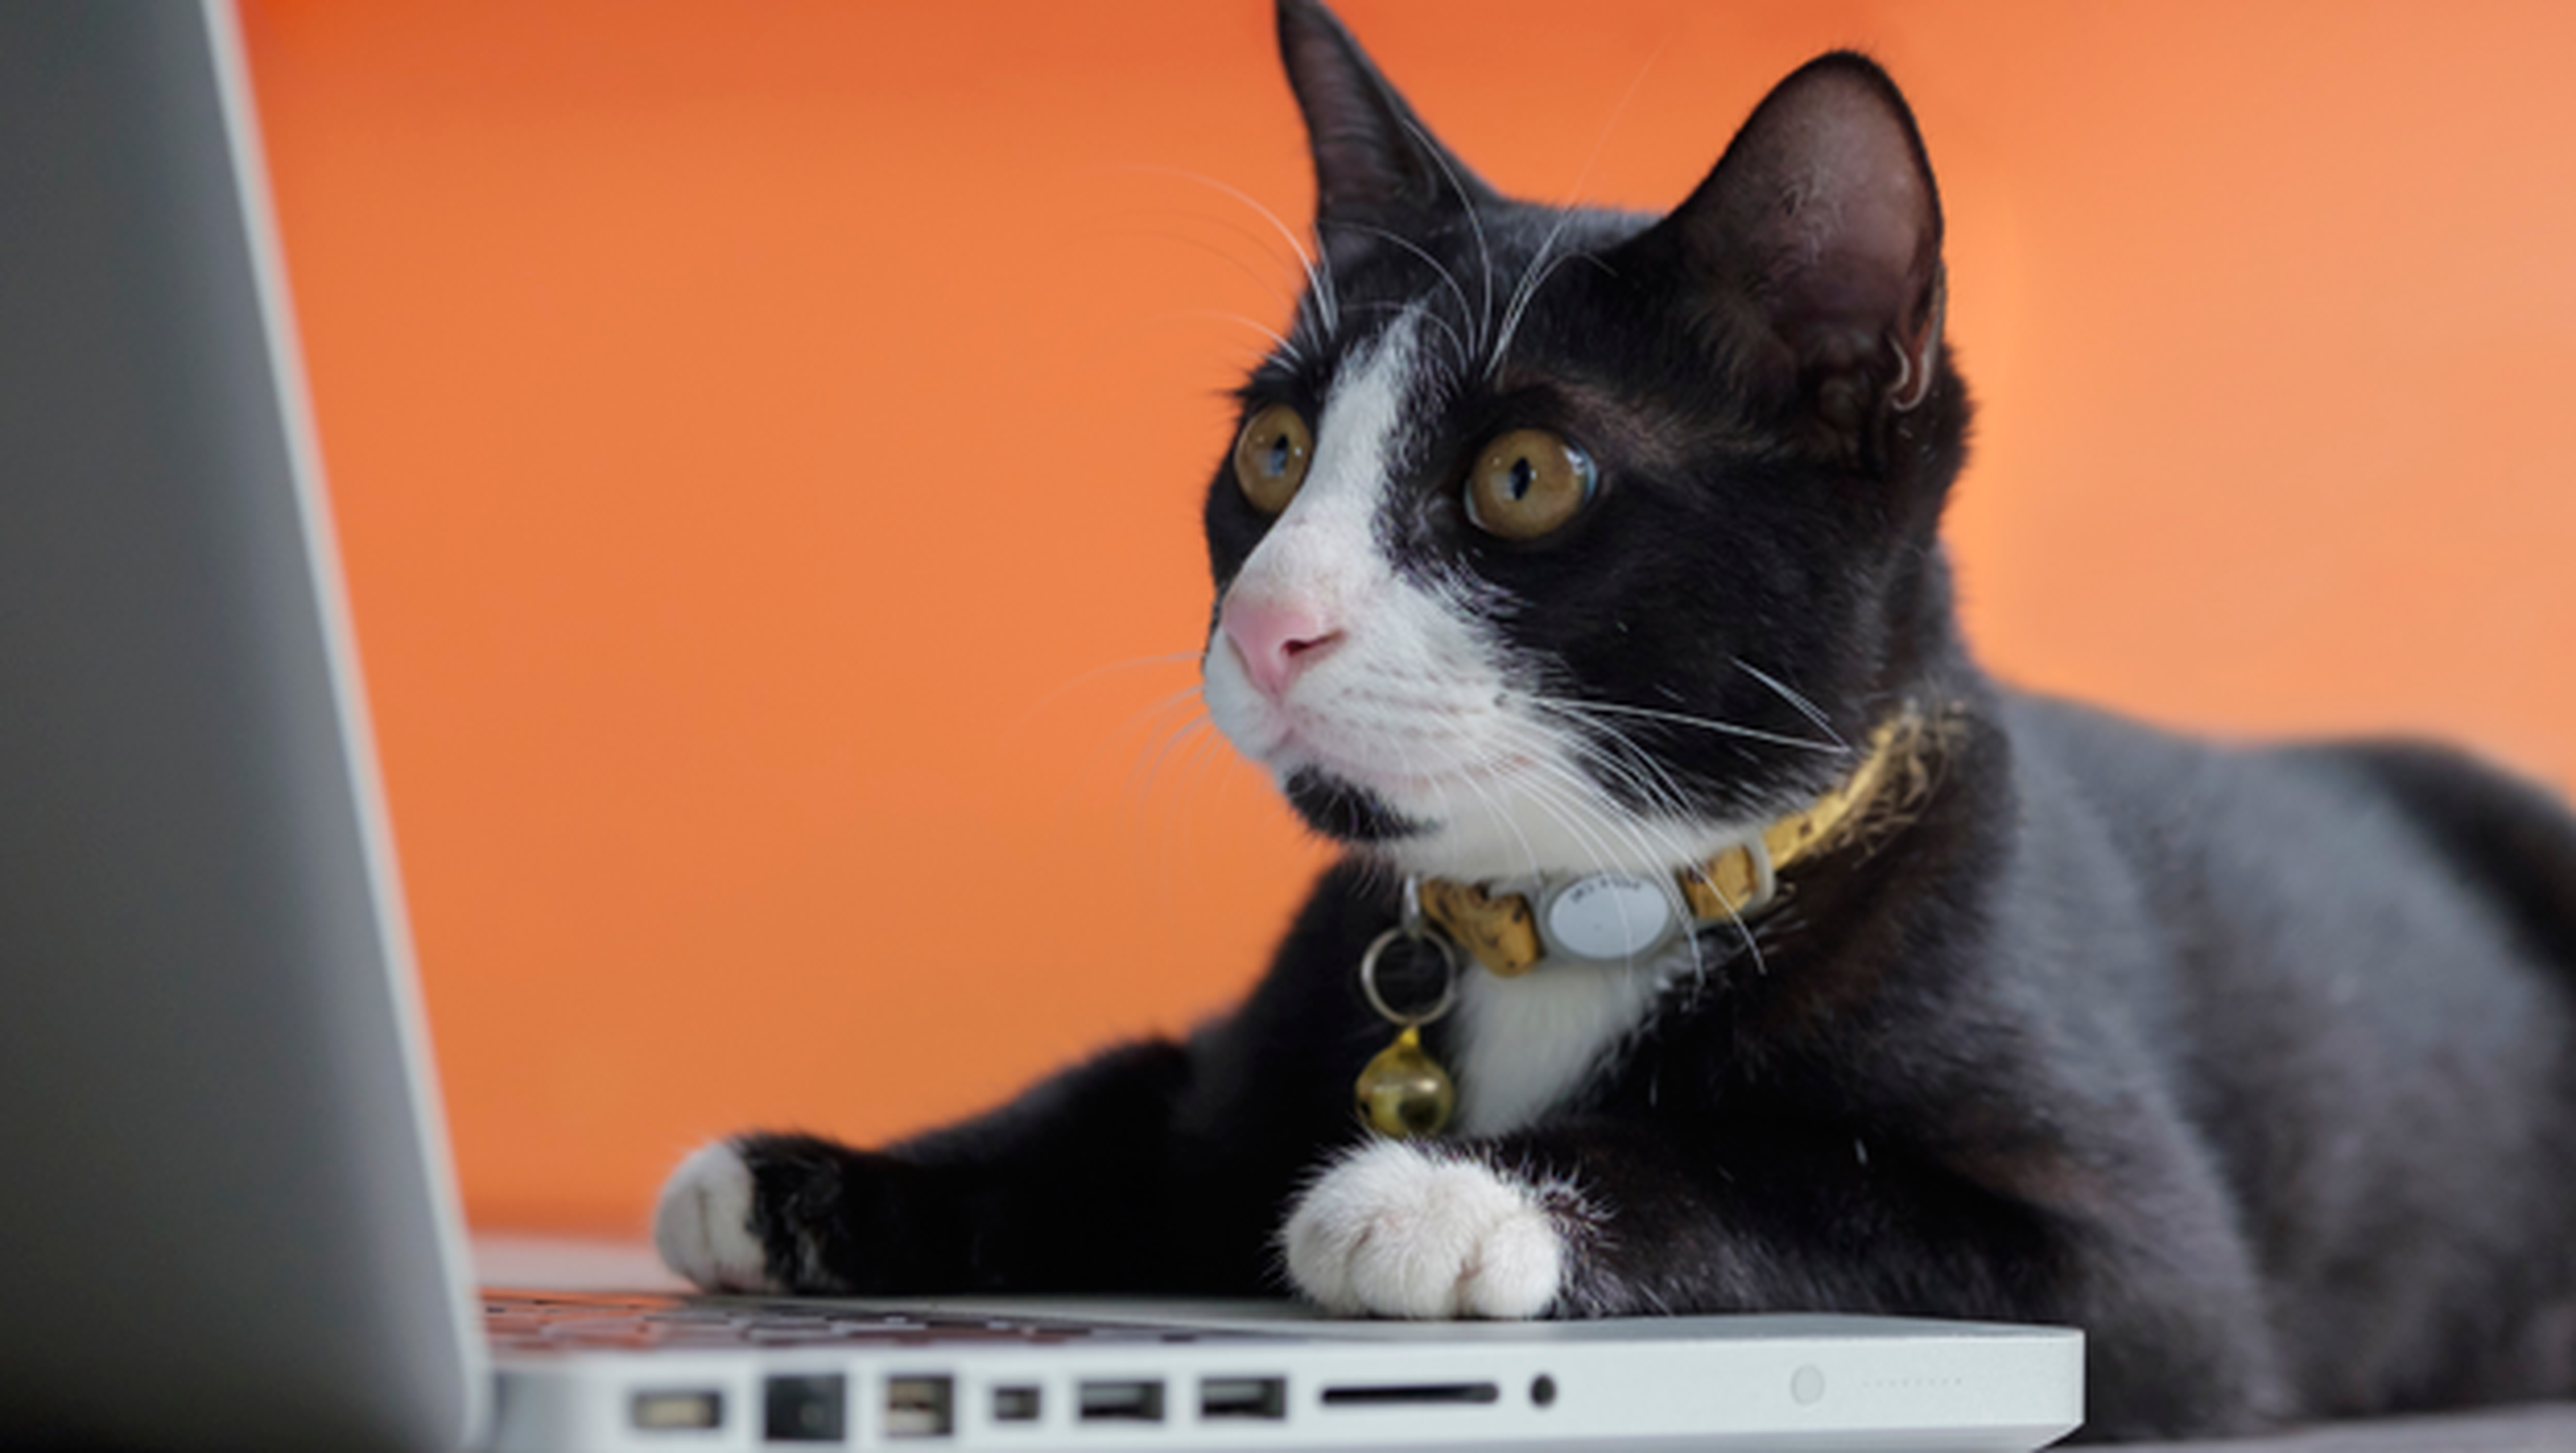 Por qué nos gusta tanto vídeos gatos Internet? | Hoy